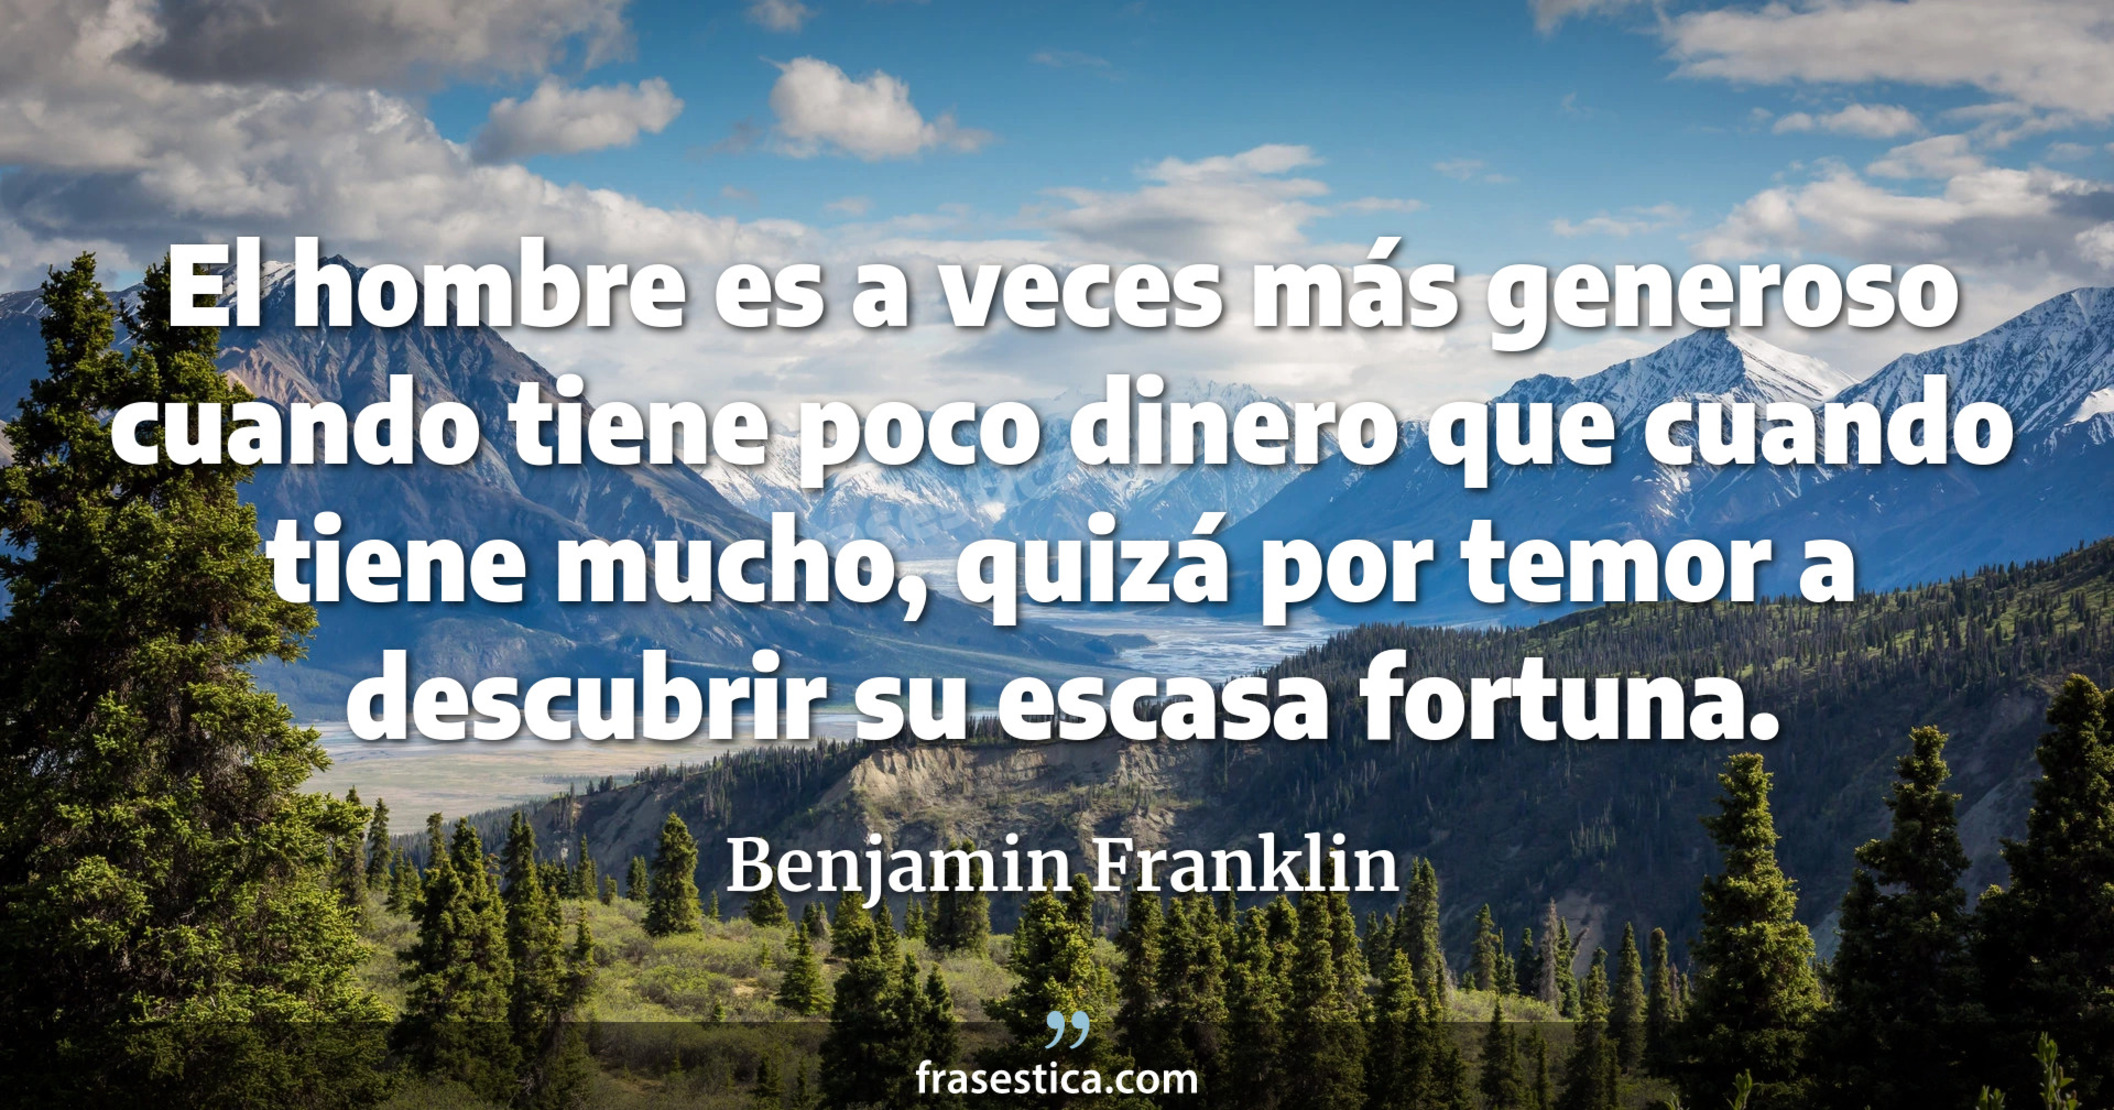 El hombre es a veces más generoso cuando tiene poco dinero que cuando tiene mucho, quizá por temor a descubrir su escasa fortuna. - Benjamin Franklin